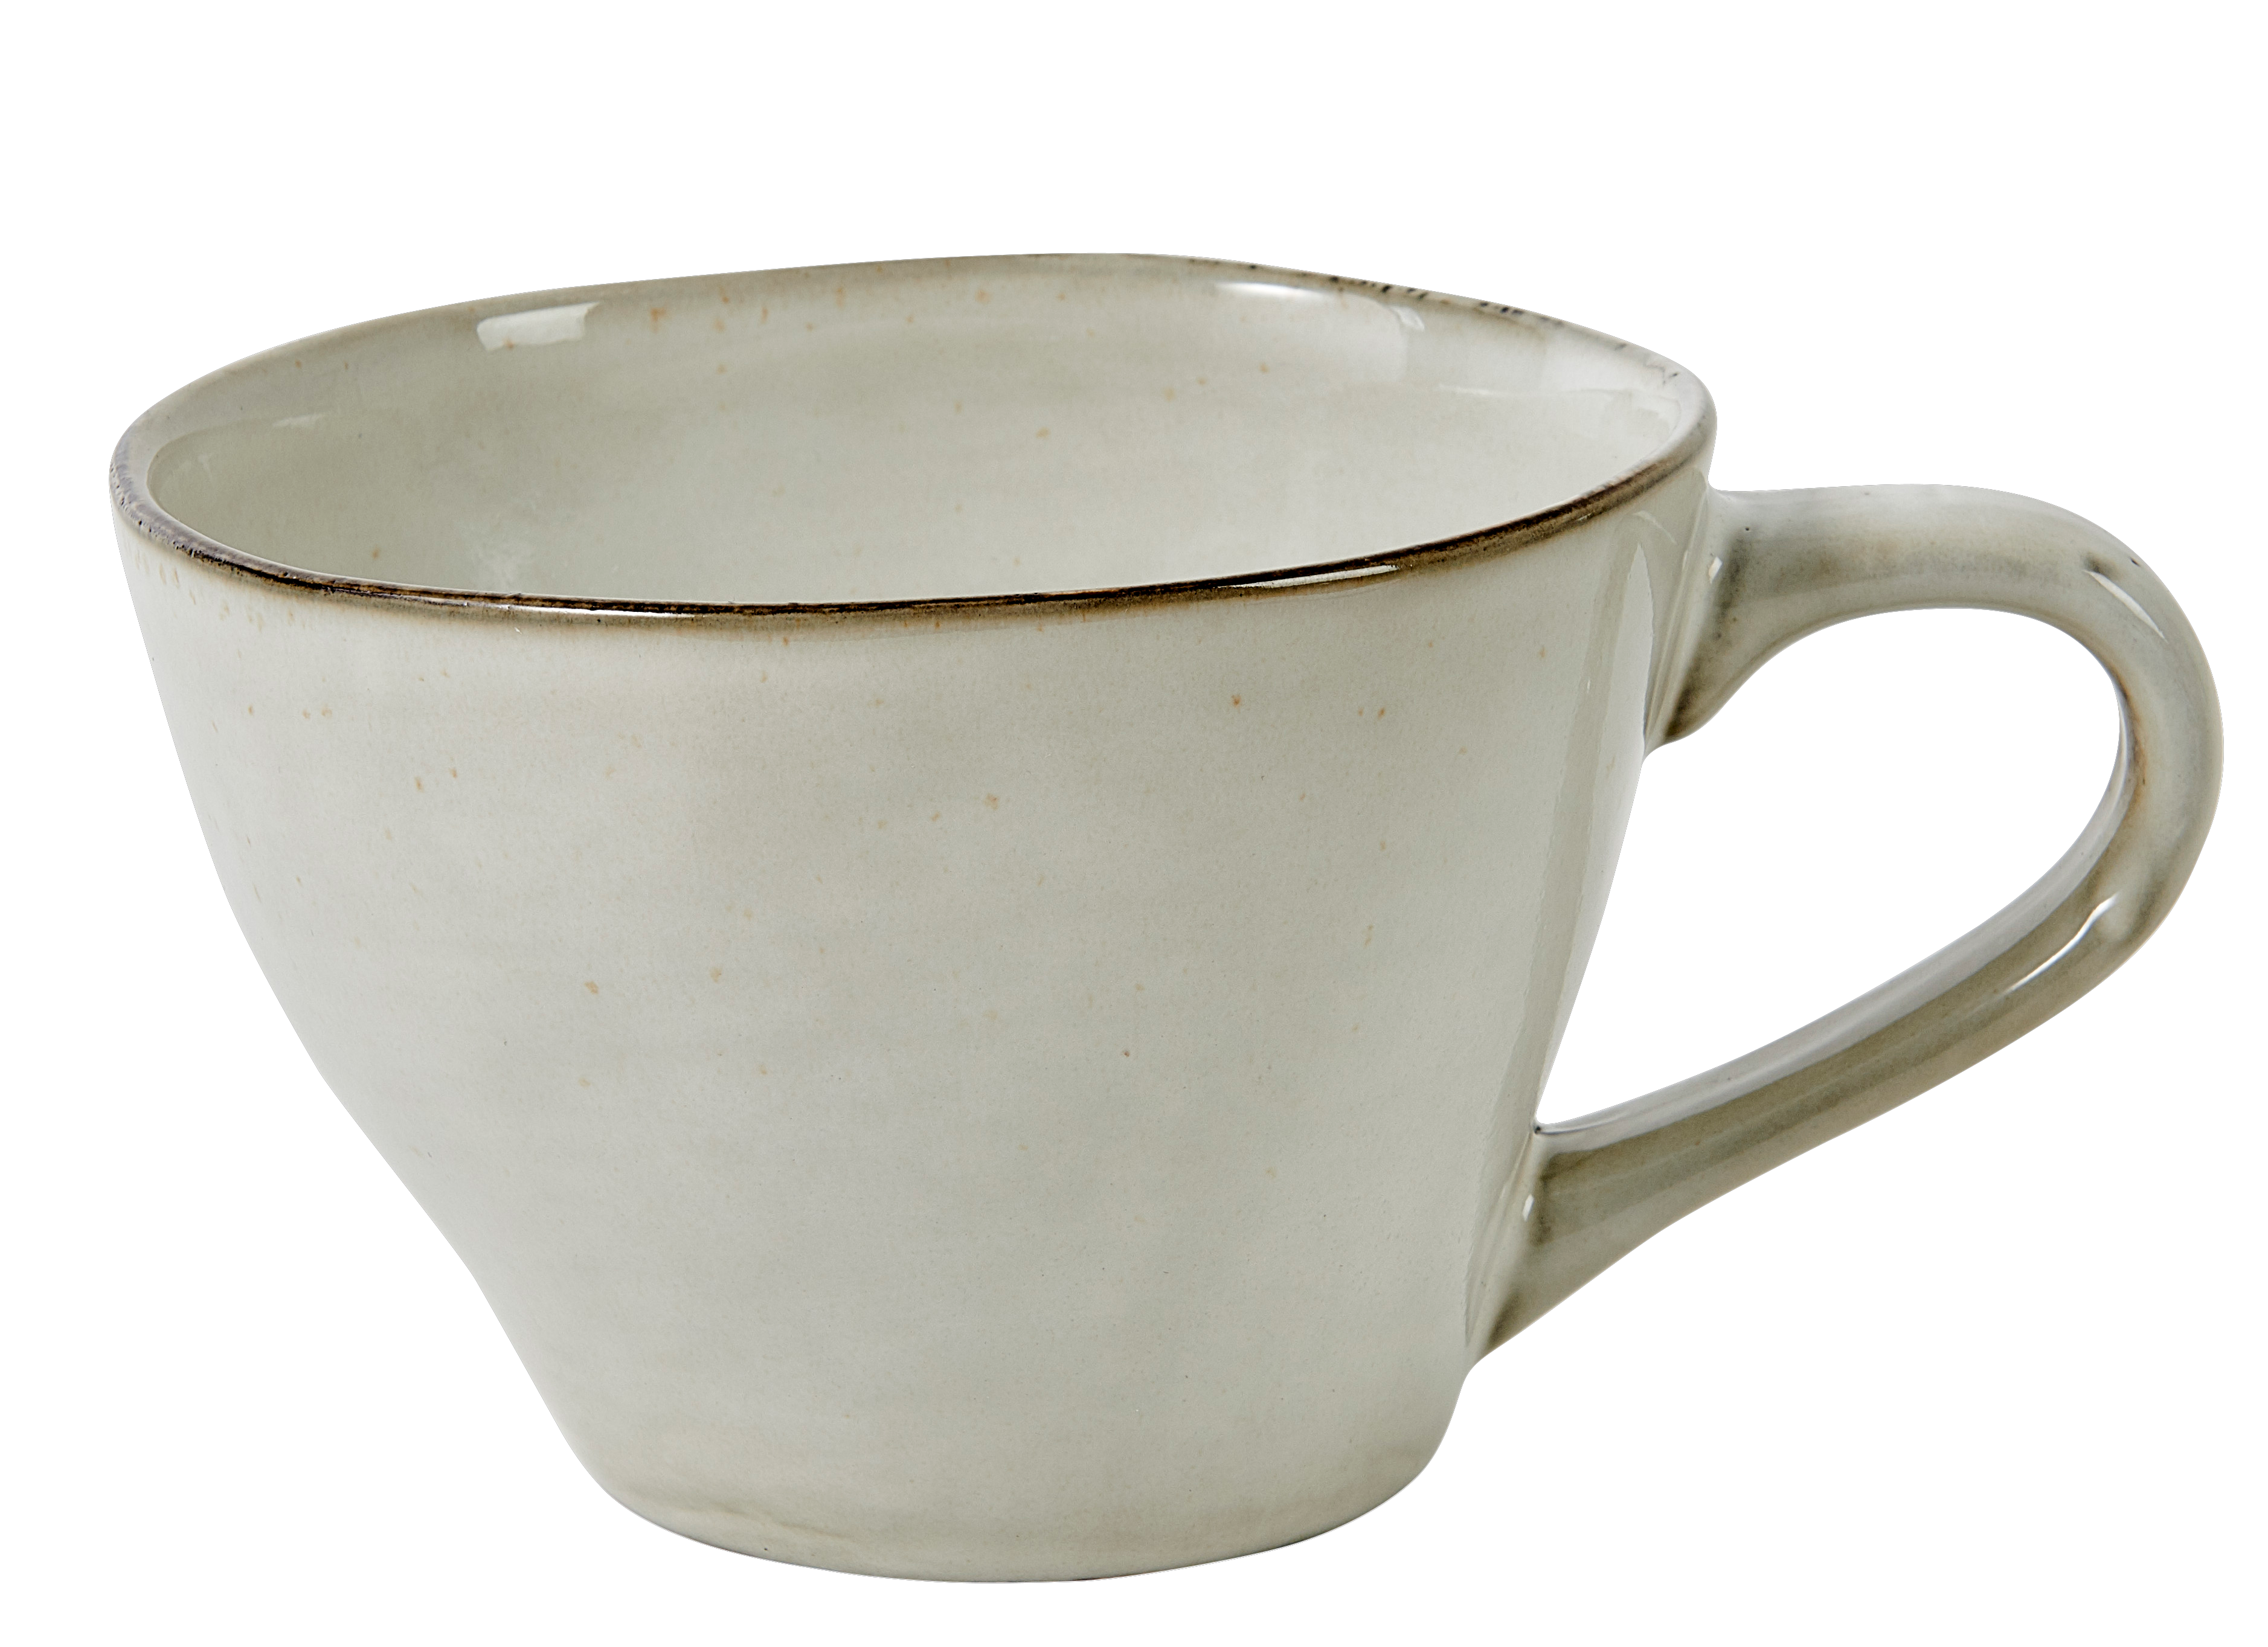 Mug avec couvercle signe Astro en Porcelaine 45 cl - Vaisselle